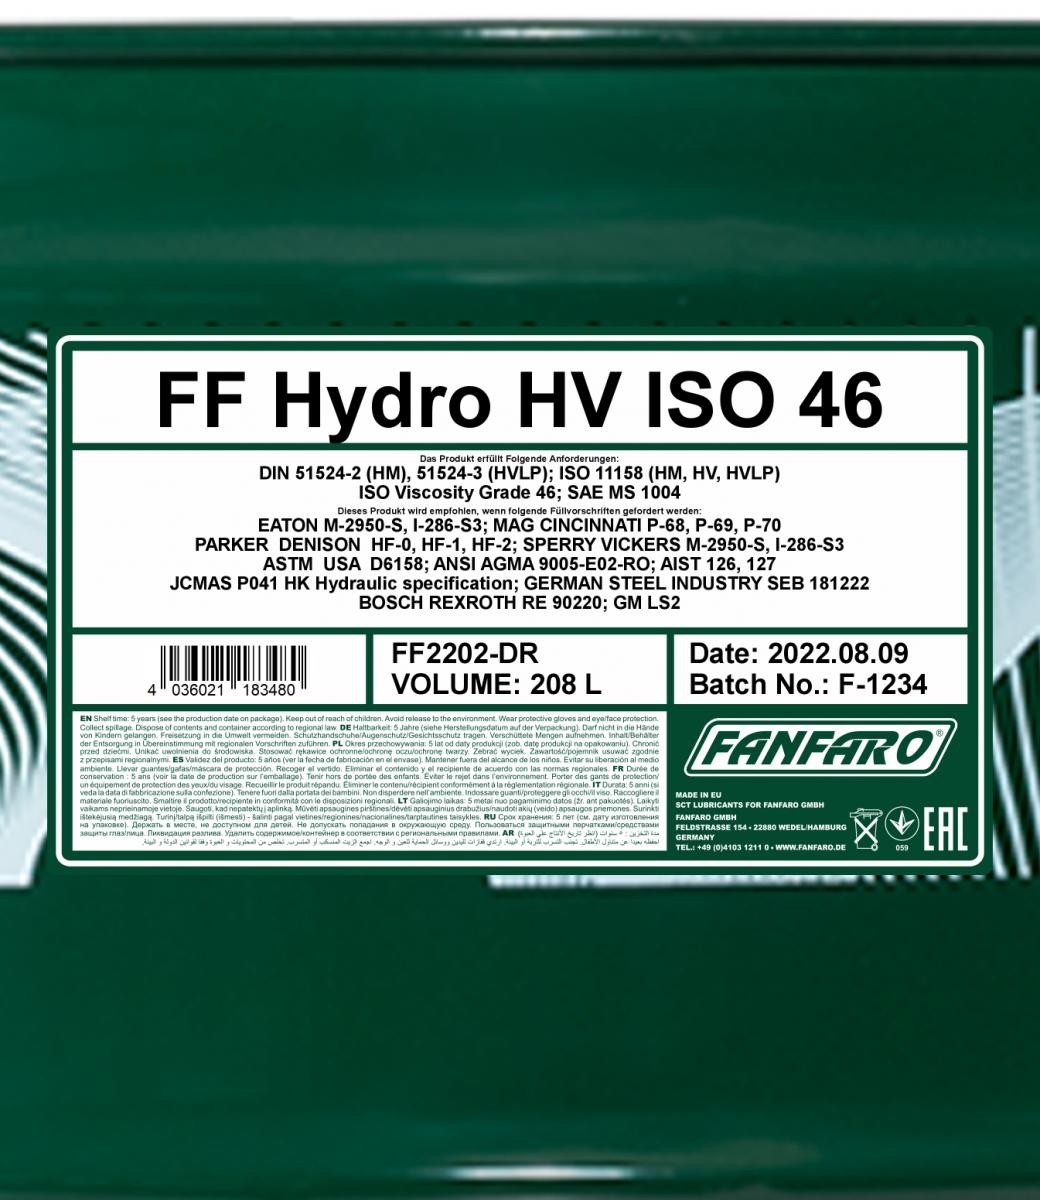 FANFARO Hydraulic fluid FF2202-DR